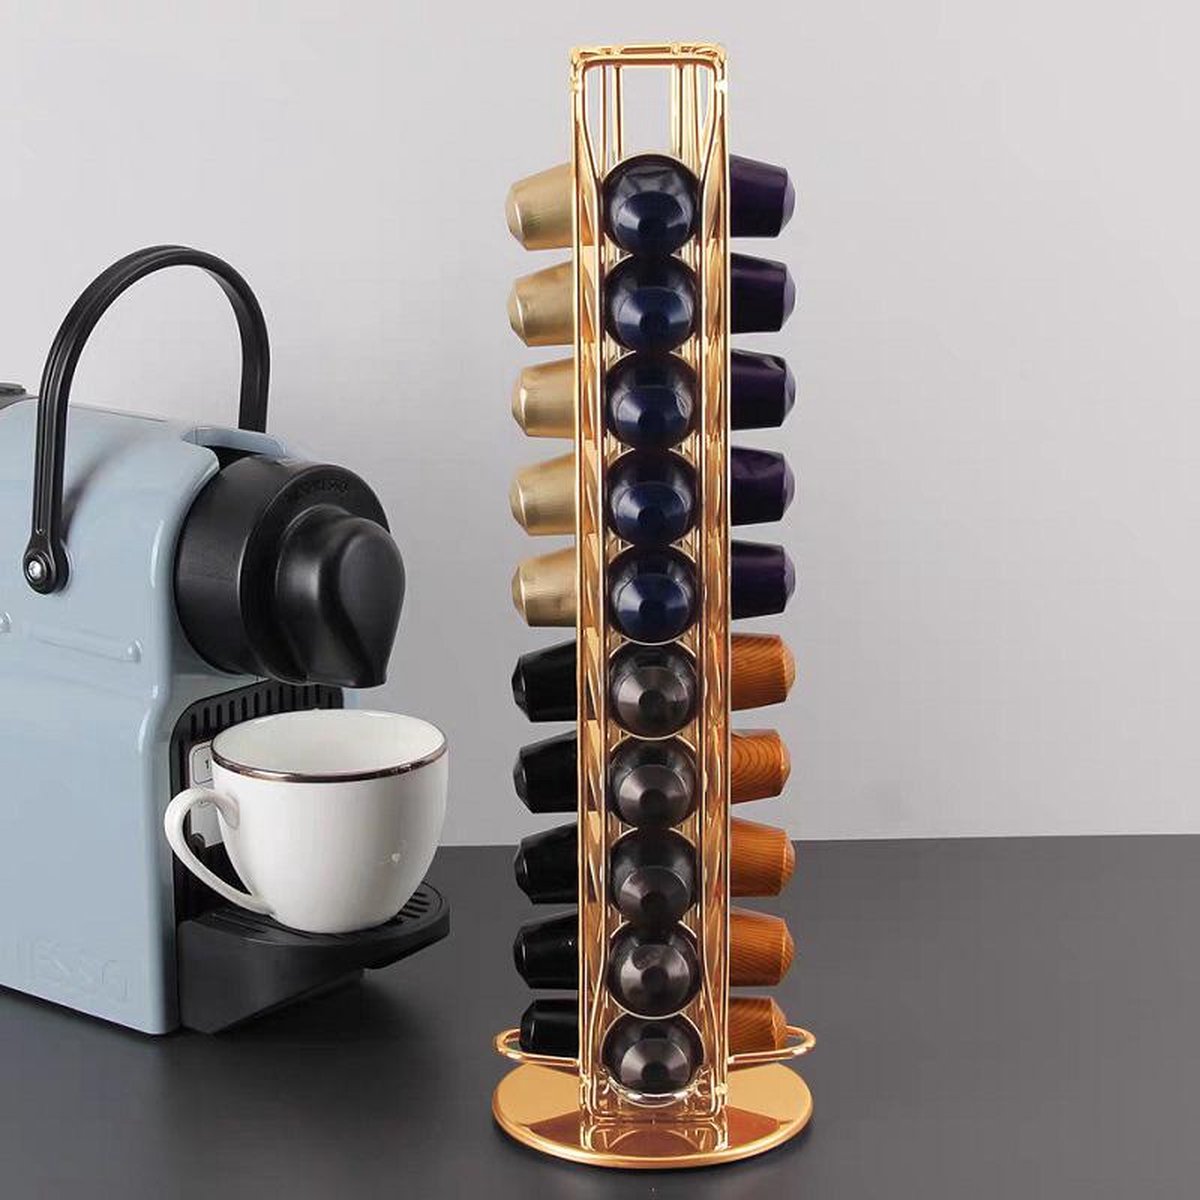 Porte-capsule nespresso rotatif 40 pièces -doré | bol.com